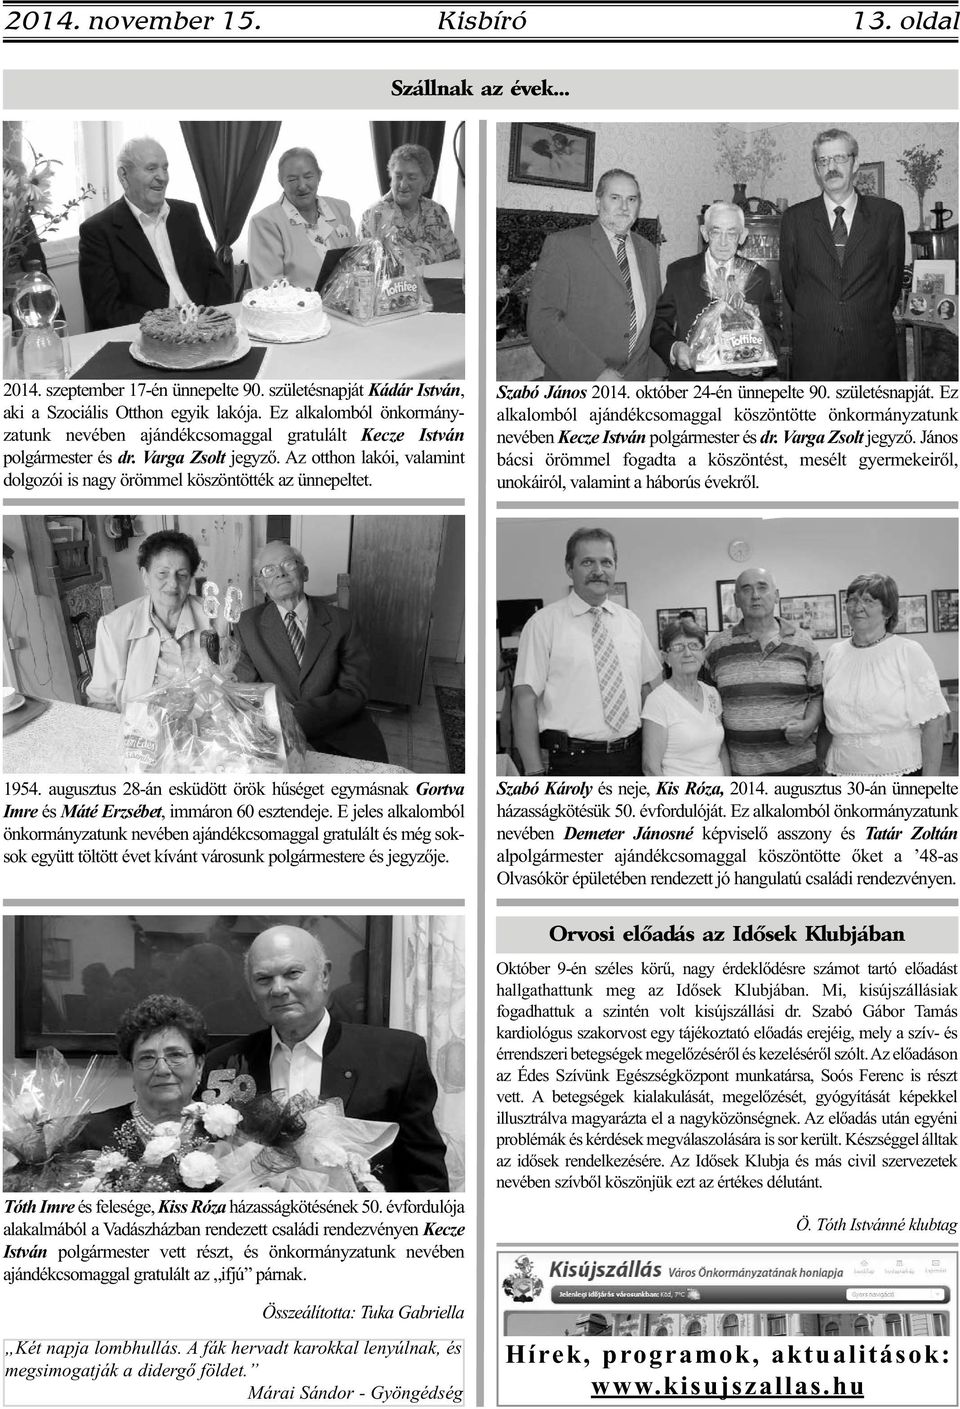 Szabó János 2014. október 24-én ünnepelte 90. születésnapját. Ez alkalomból ajándékcsomaggal köszöntötte önkormányzatunk nevében Kecze István polgármester és dr. Varga Zsolt jegyző.